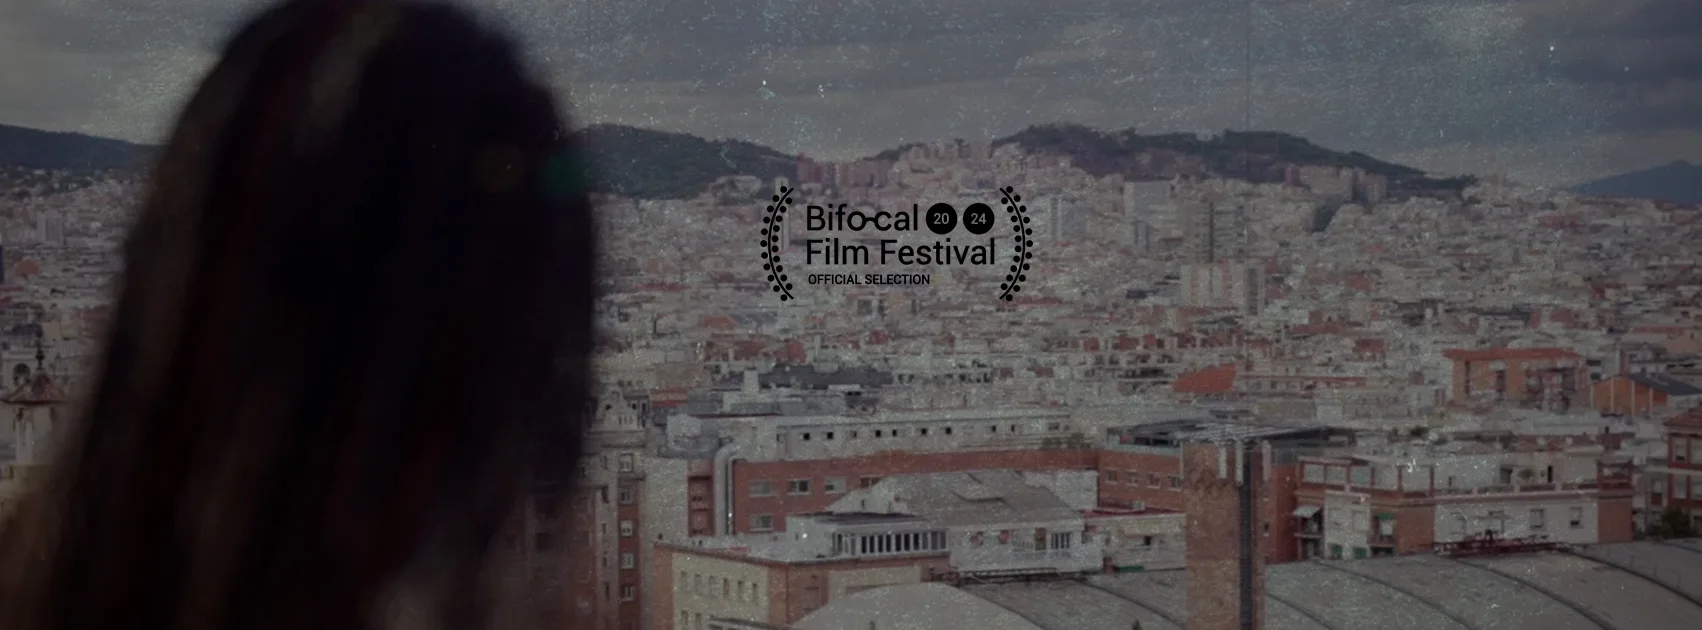 Il documentario corto "As leaves in the wind" di Sofia Luz è nella selezione ufficiale del Bifocal Film Festival.